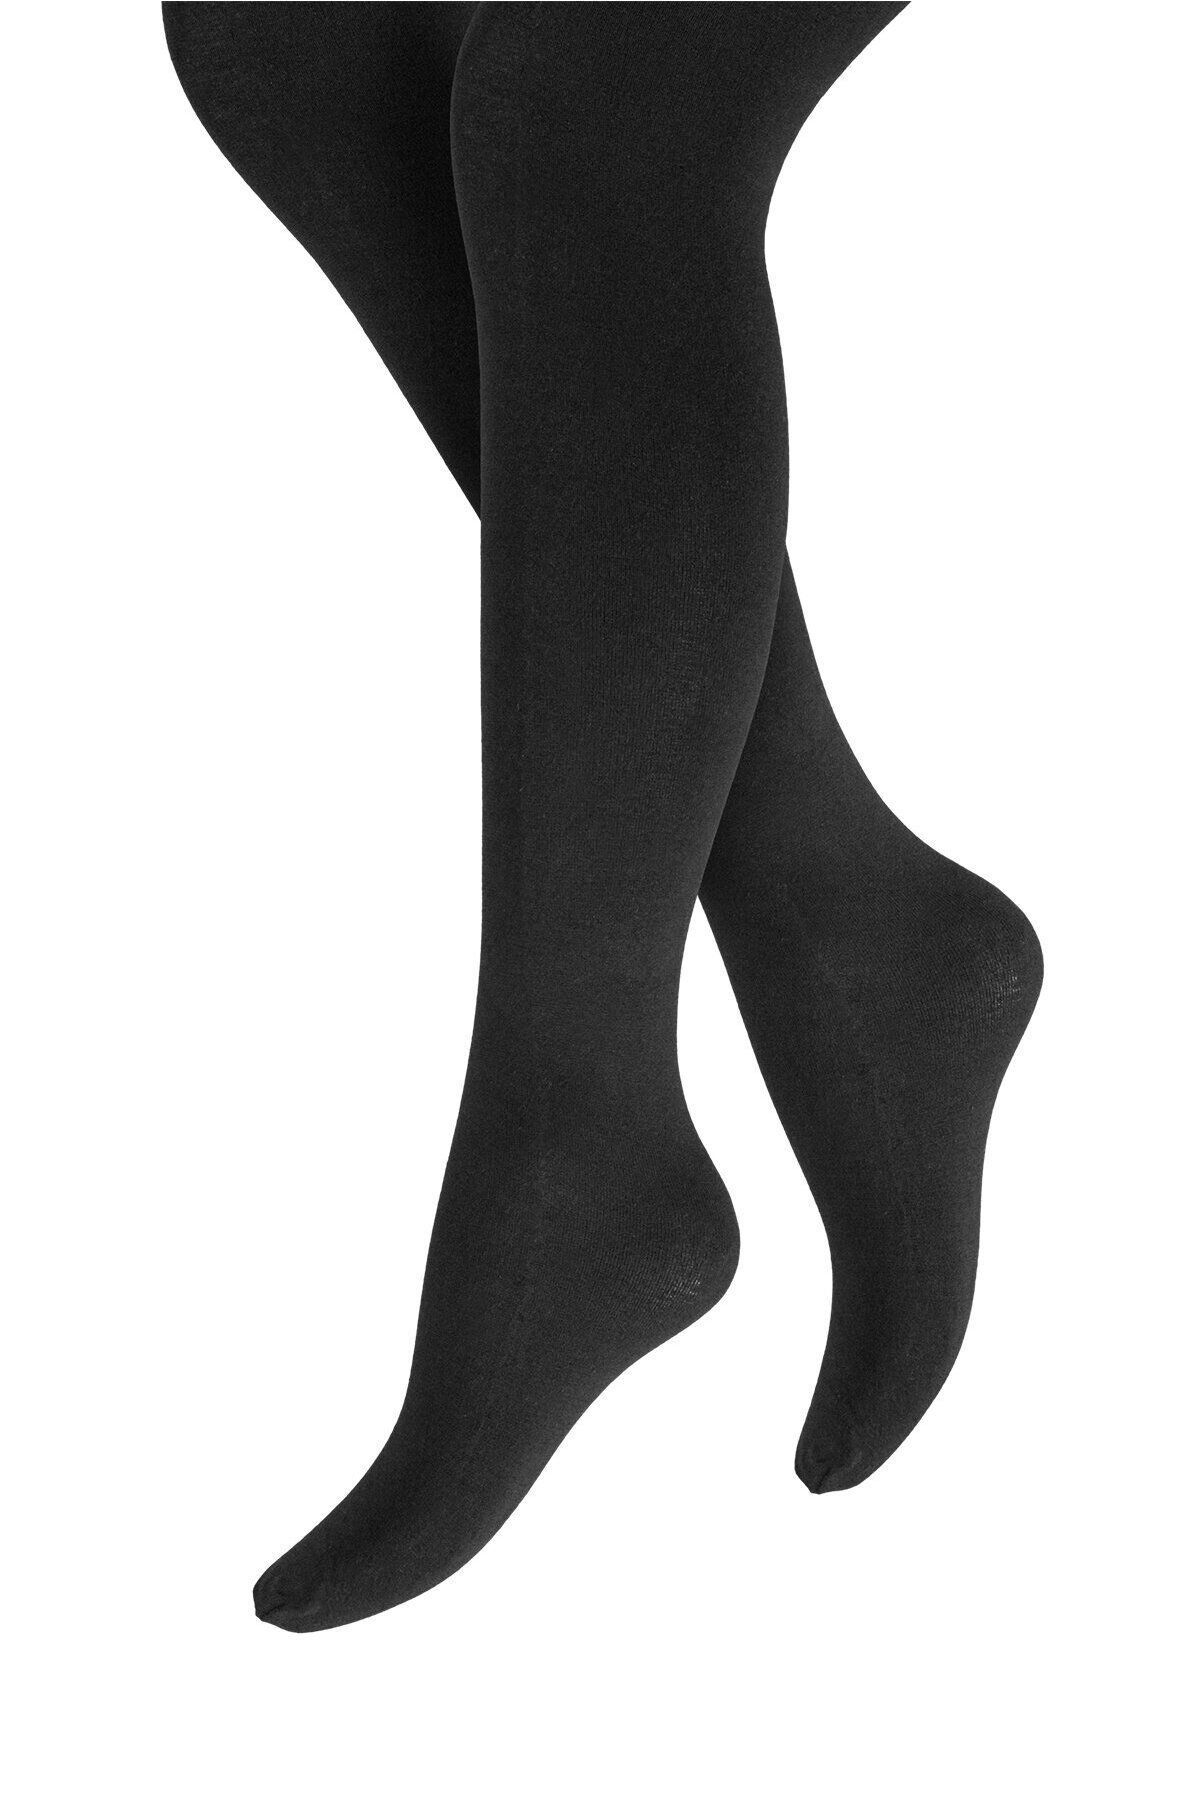 Penti Siyah Kız Çocuk Bambu Külotlu Çorap